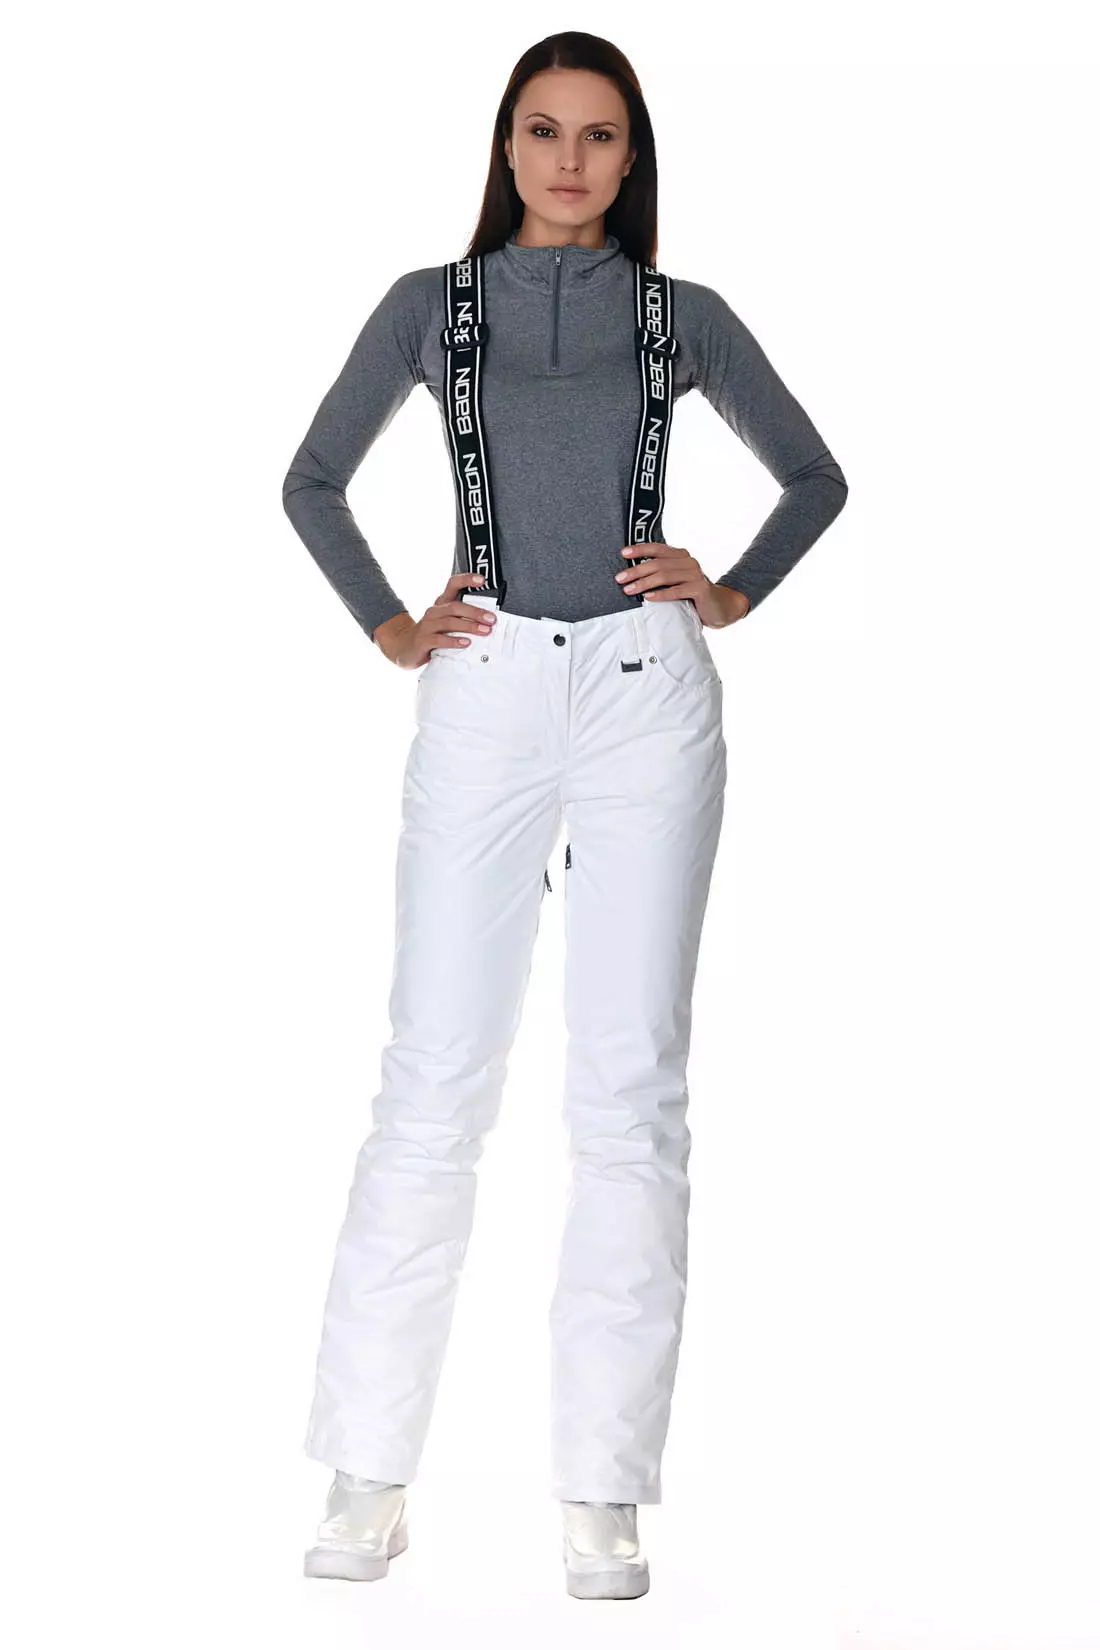 Modne hlače 2021: Ženske elegantne modele, modni trendi 917_308